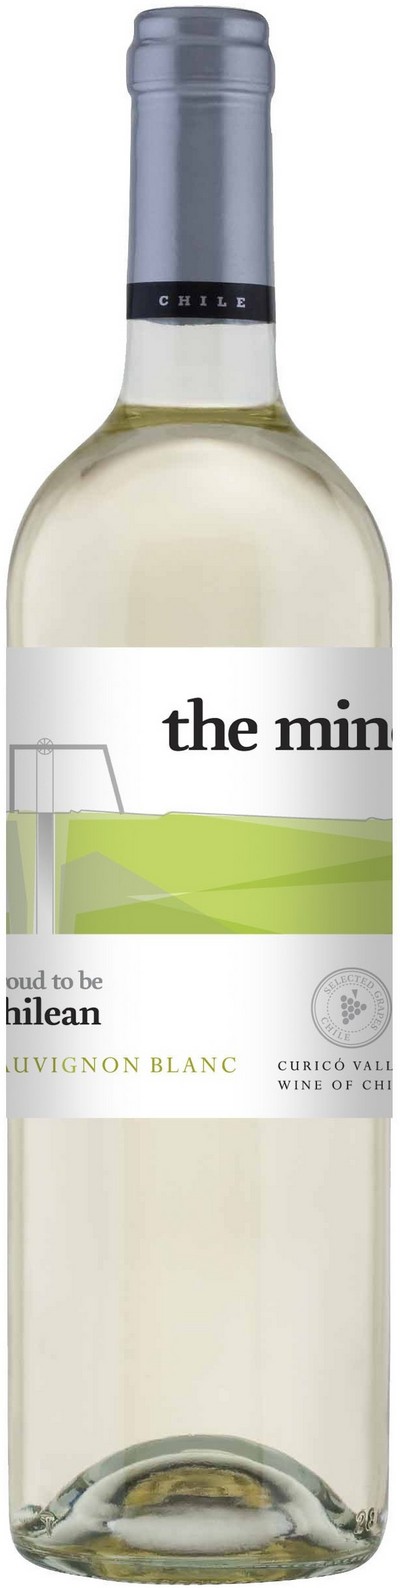 the-mine-sauvignon-blanc-2015